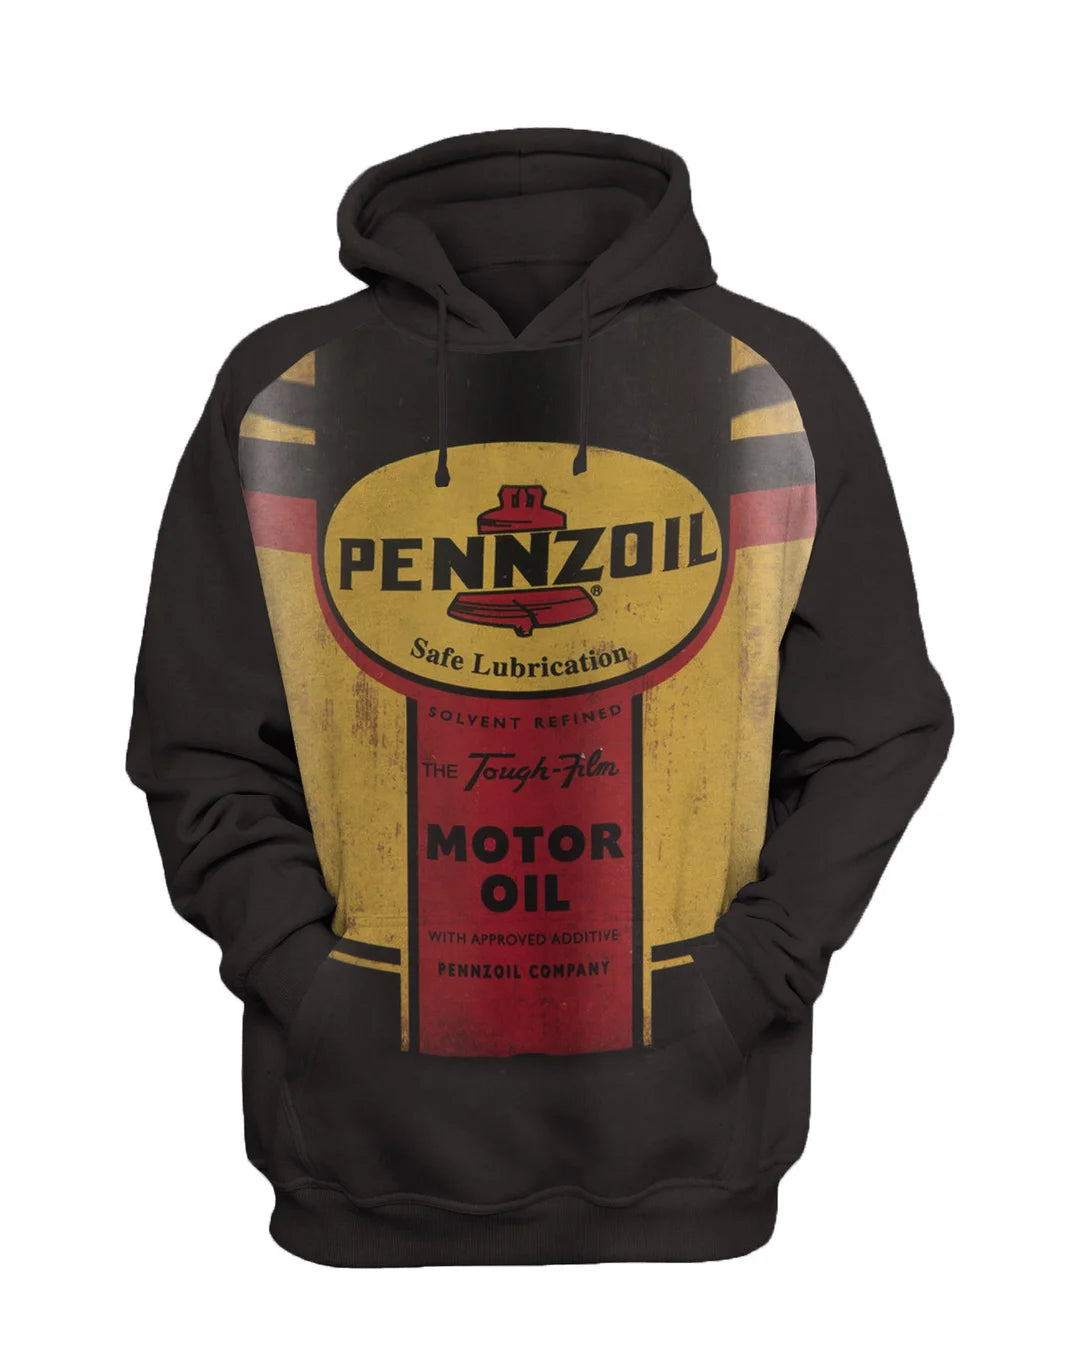 Pennzoil Mens Vintage Motor Oil Printed Sweatshirt Set - DUVAL